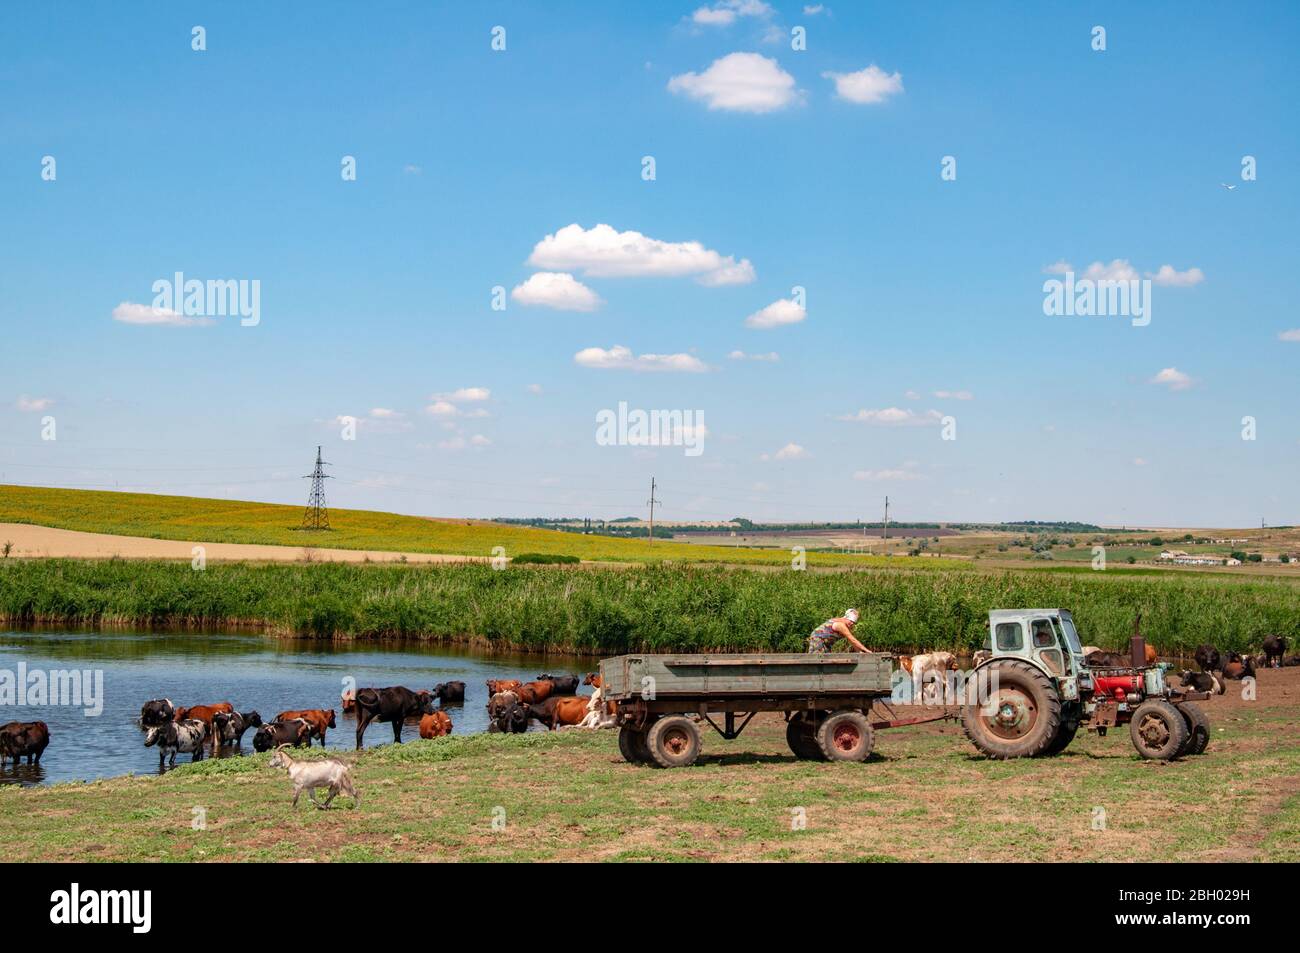 Ländliche Landschaft von landwirtschaftlichen Feld mit alten Traktor und Kühe in der Nähe von Fluss. Silhouette der unerkennbaren Frau im Traktor. Sommer Blick in die Landschaft von Stockfoto